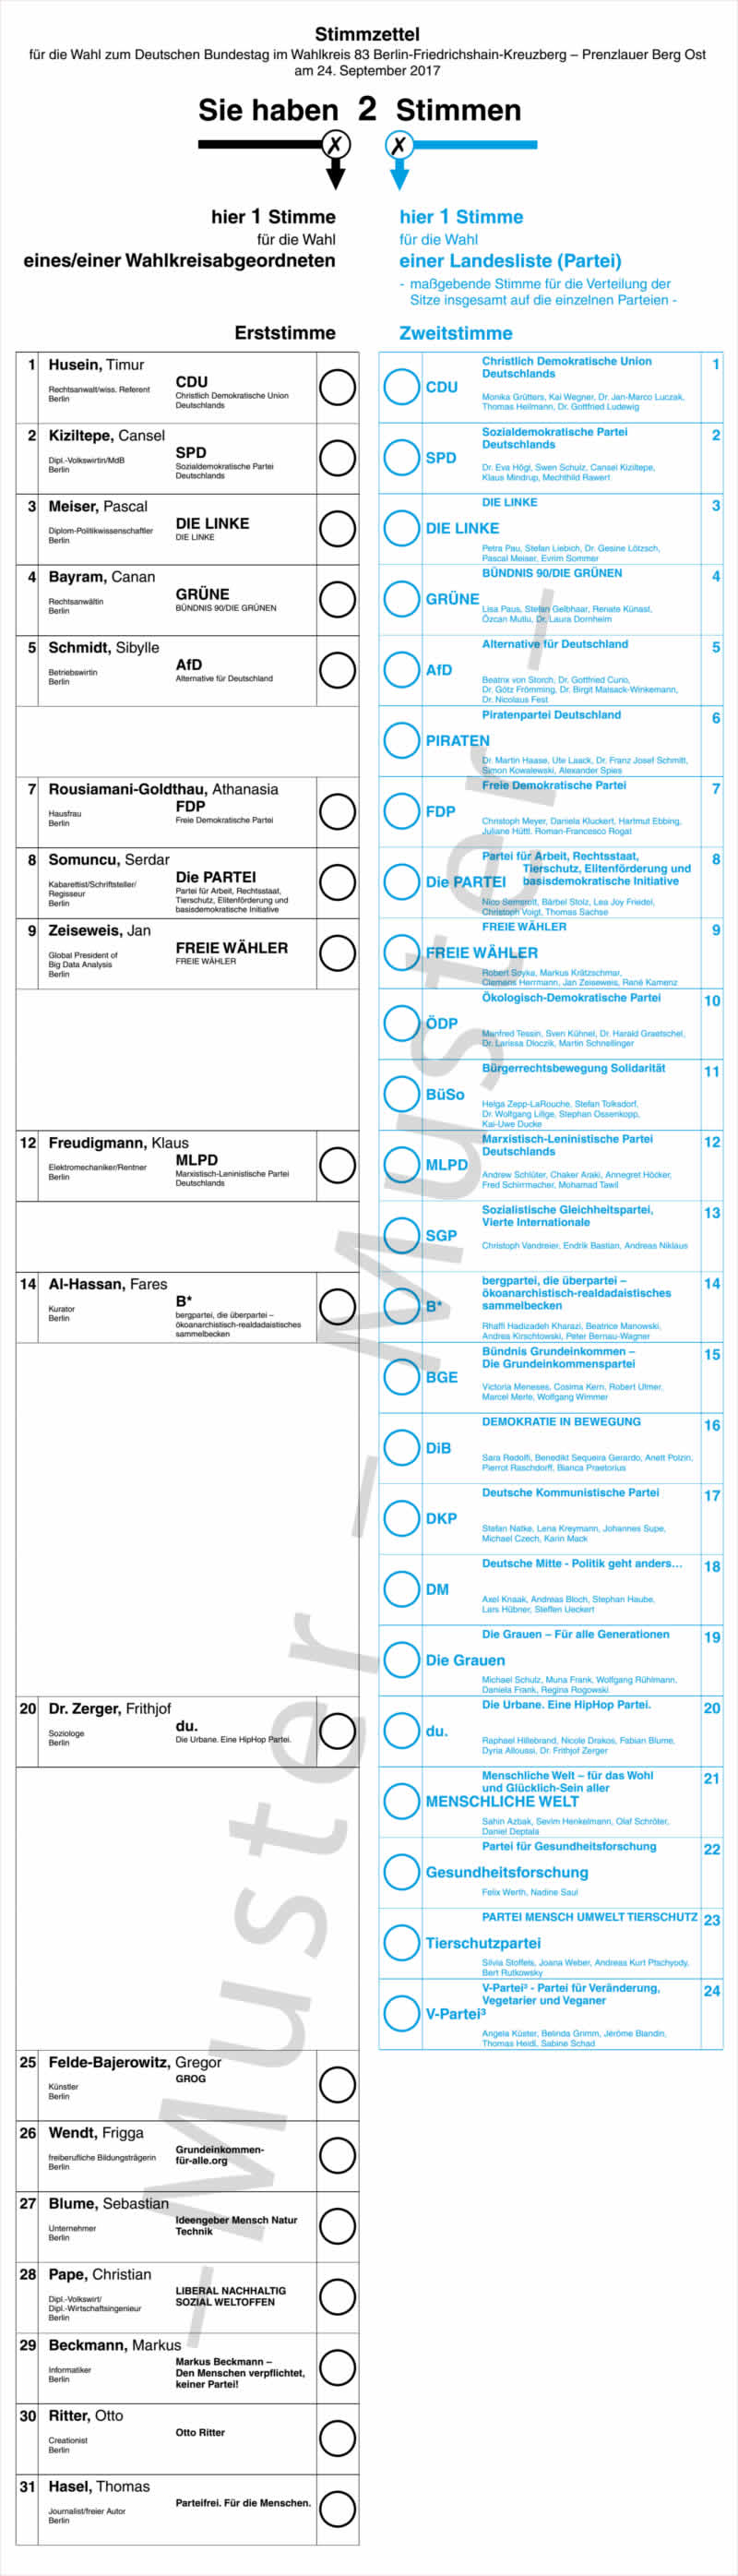 Stimmzettel für die Wahl zum Deutschen Bundestag im Wahlkreis 83 Berlin-Friedrichshain-Kreuzberg – Prenzlauer Berg Ost am 24. September 2017